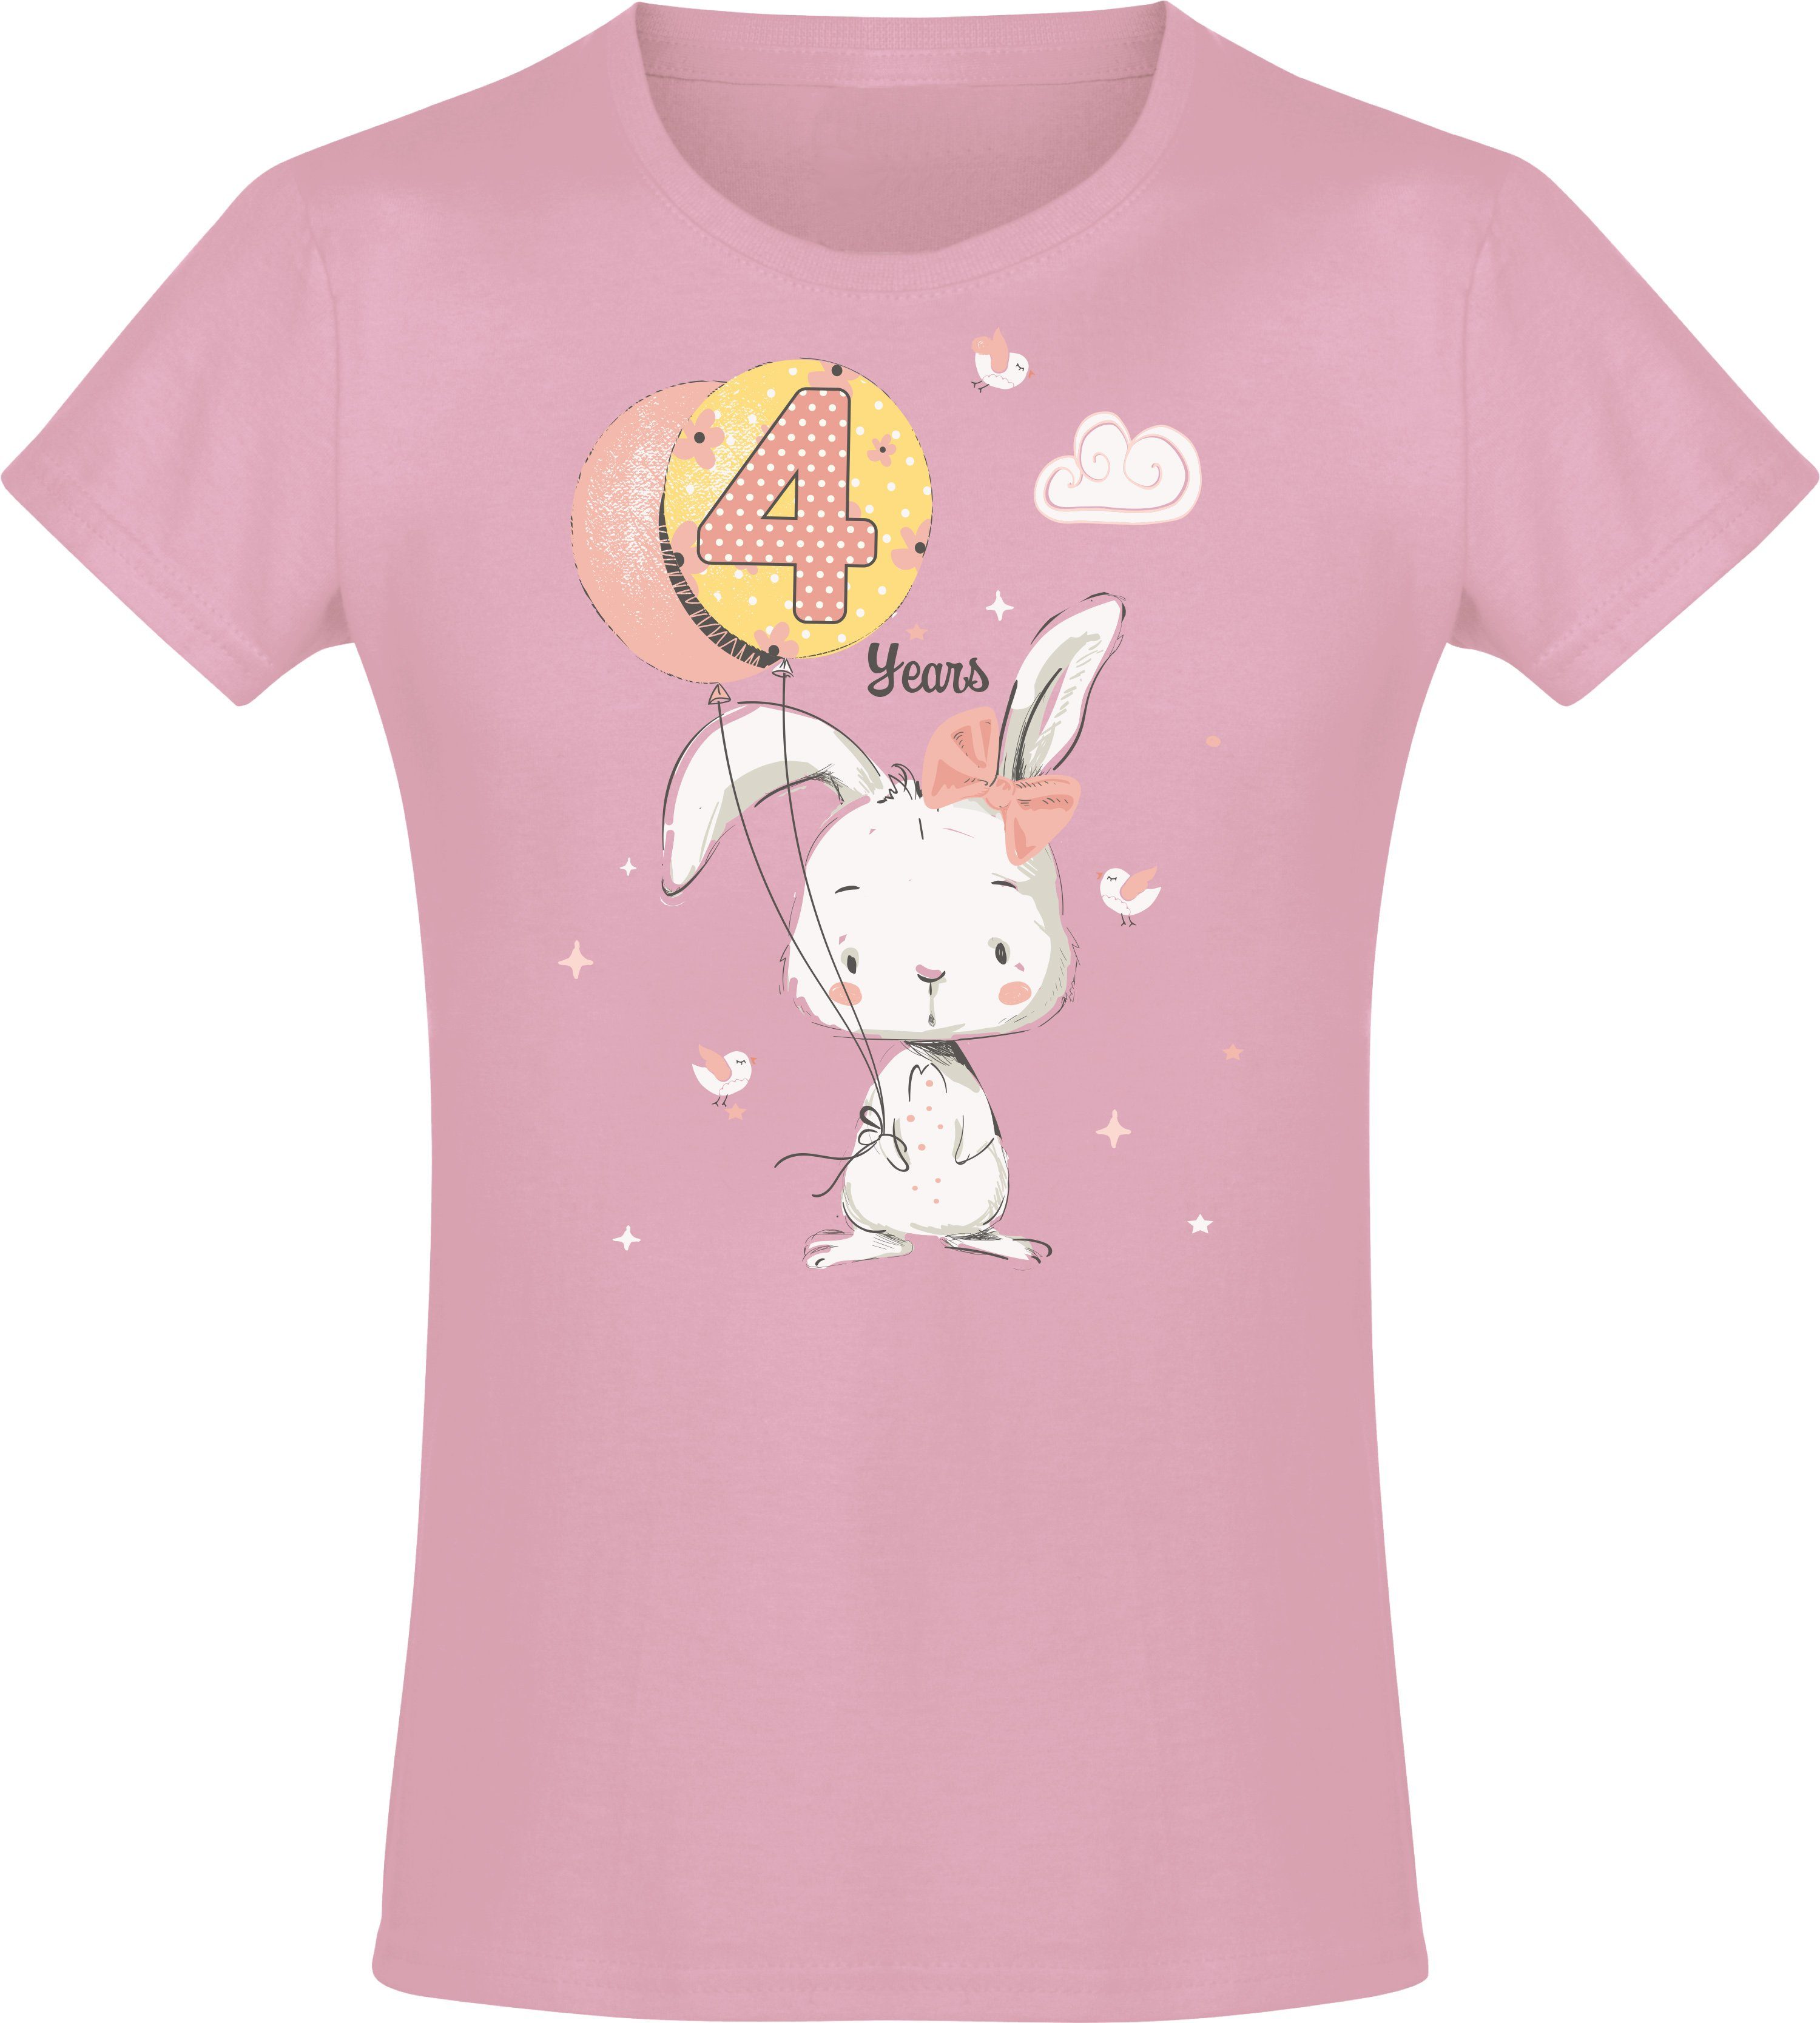 Baddery Print-Shirt Geburstagsgeschenk für Mädchen : 4 Jahre mit Hase hochwertiger Siebdruck, aus Baumwolle Light Pink